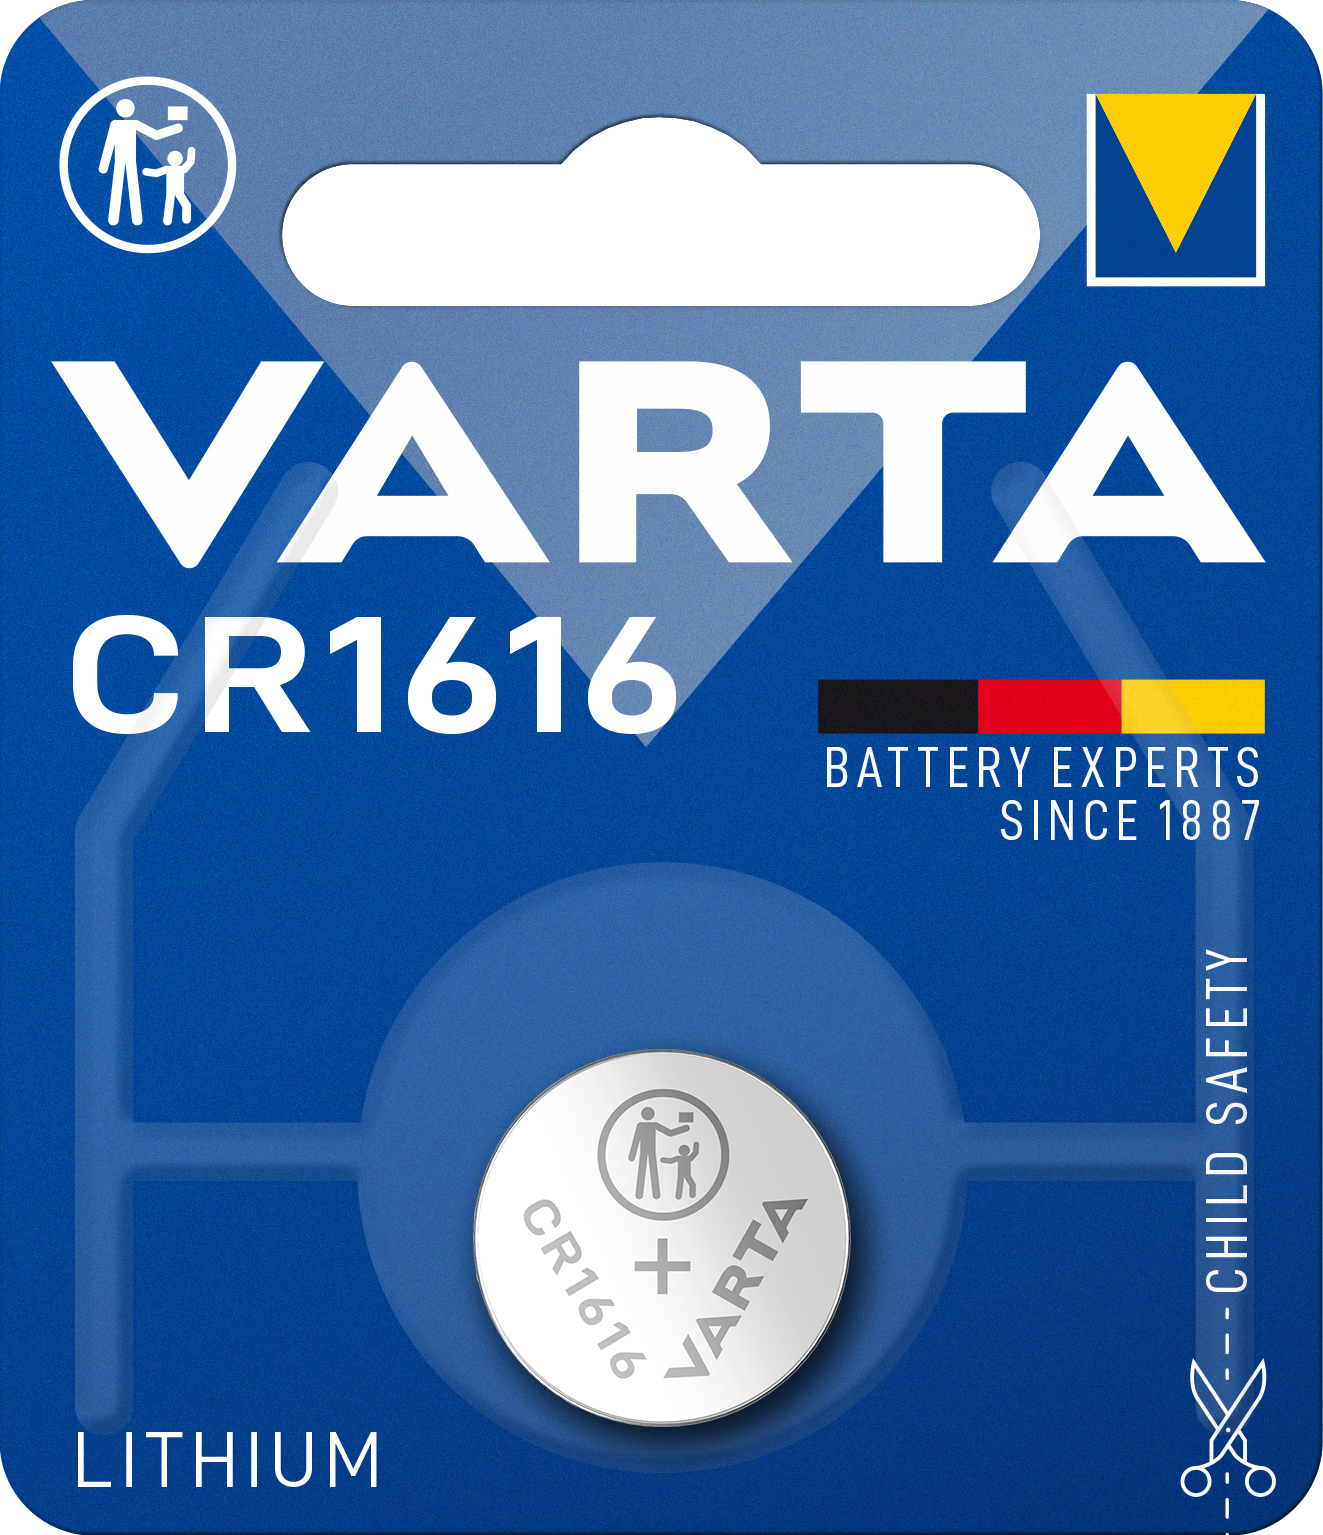 VARTA - Lithium - 1616